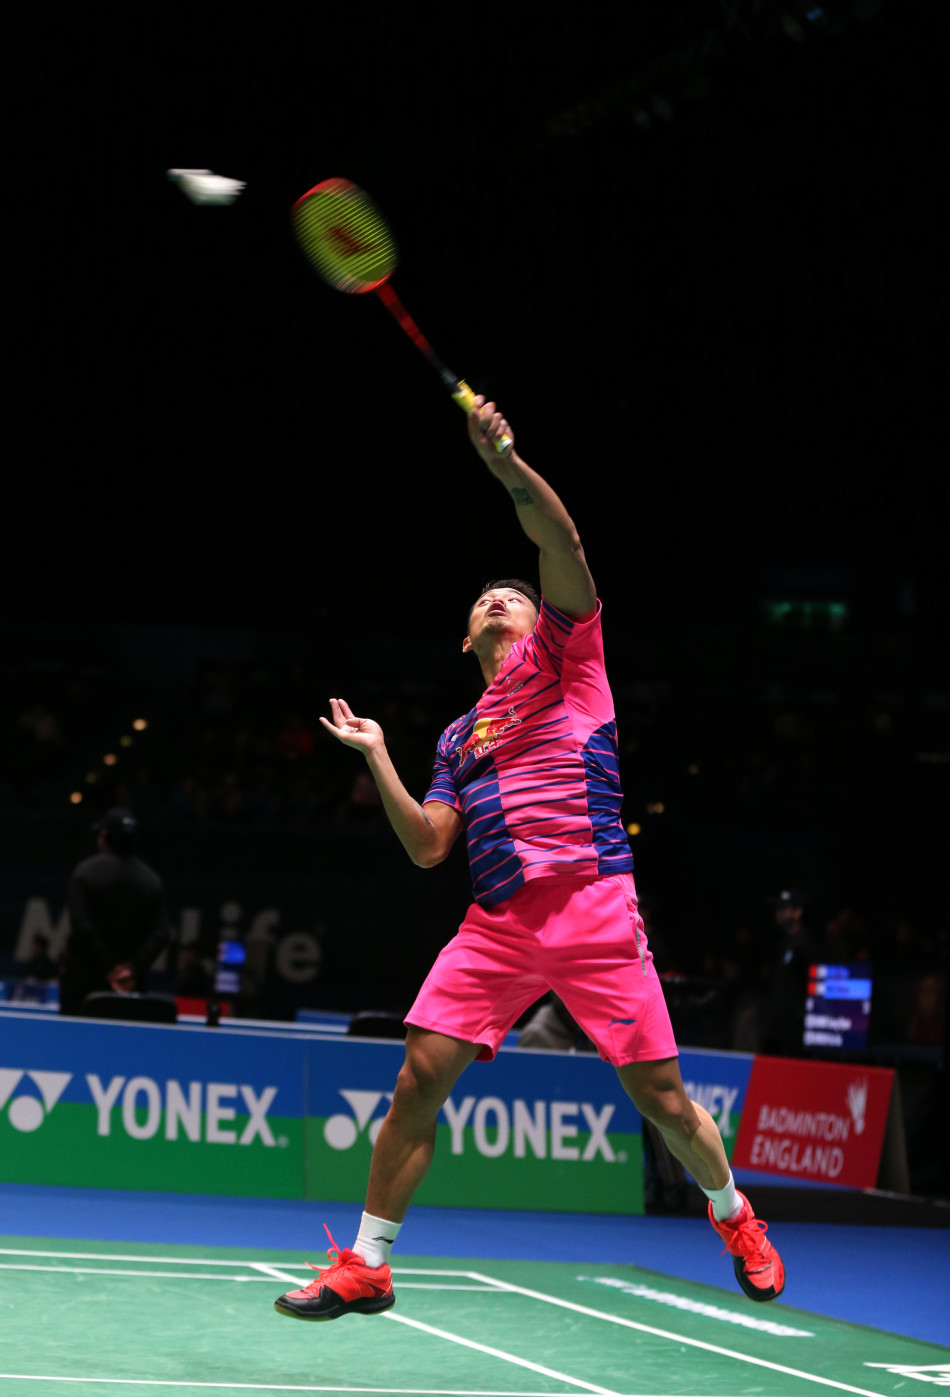 林丹在2016年全英羽毛球公开赛中夺冠